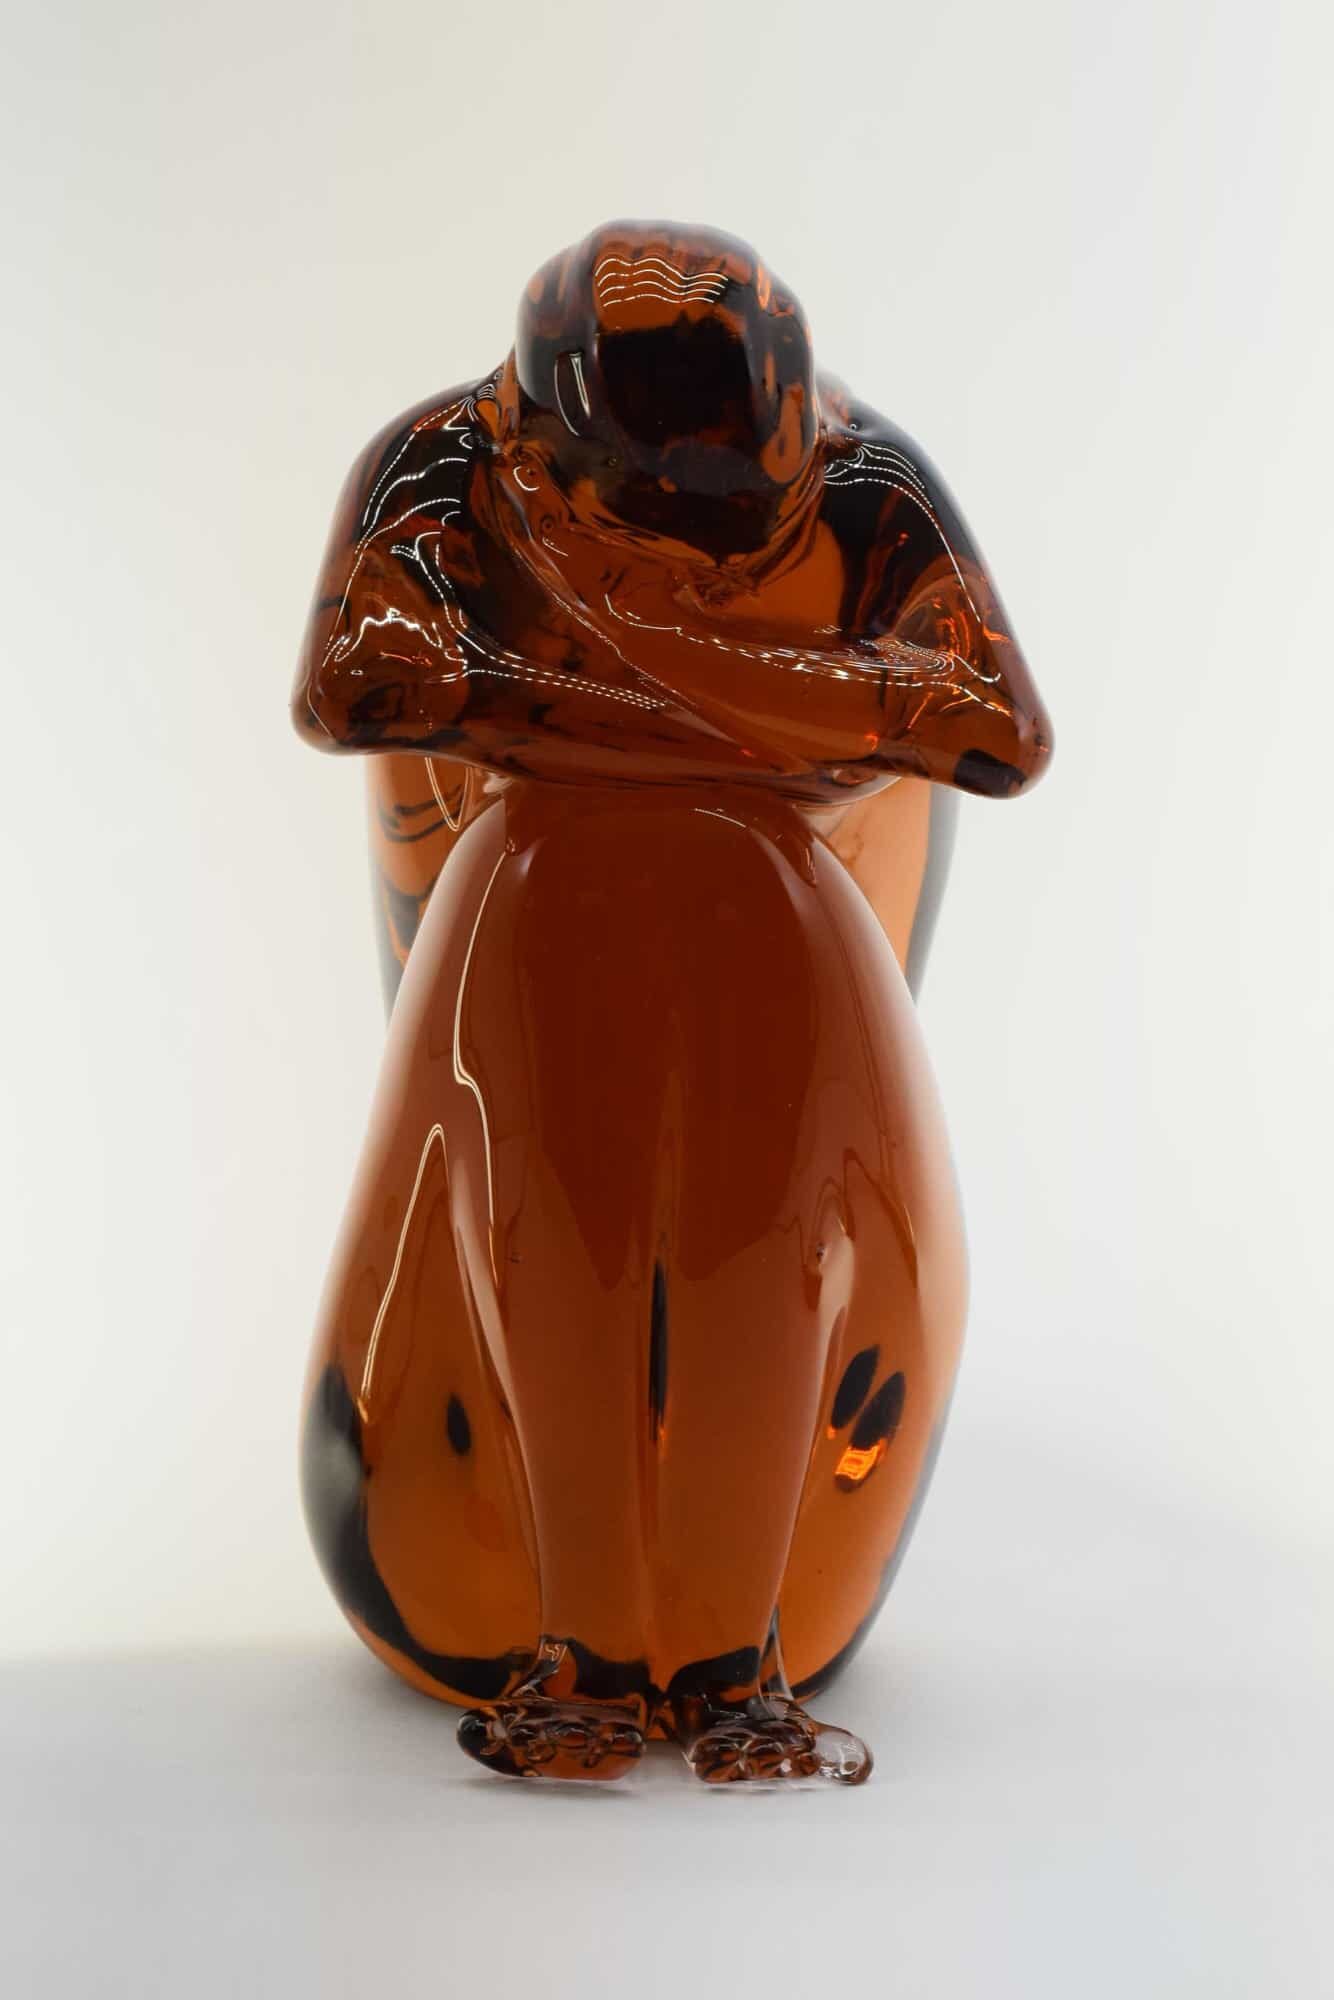 "Shame" Murano Glass Sculpture - (Art. 36643)